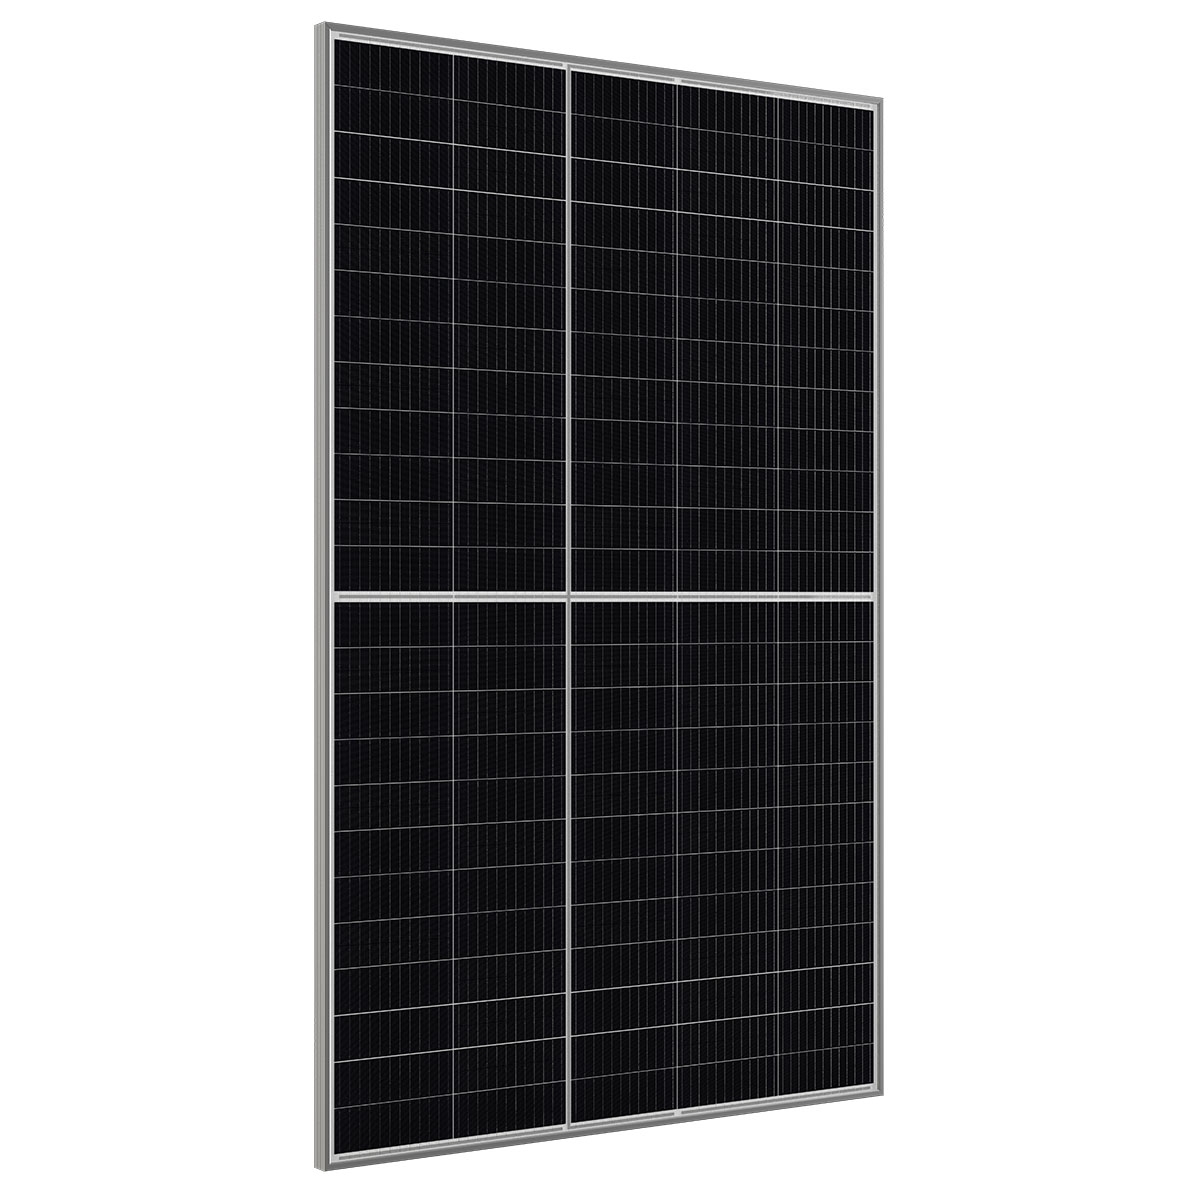 CW Enerji 405Wp M12 120PM Cells Half-Cut / F MB Solar Panel